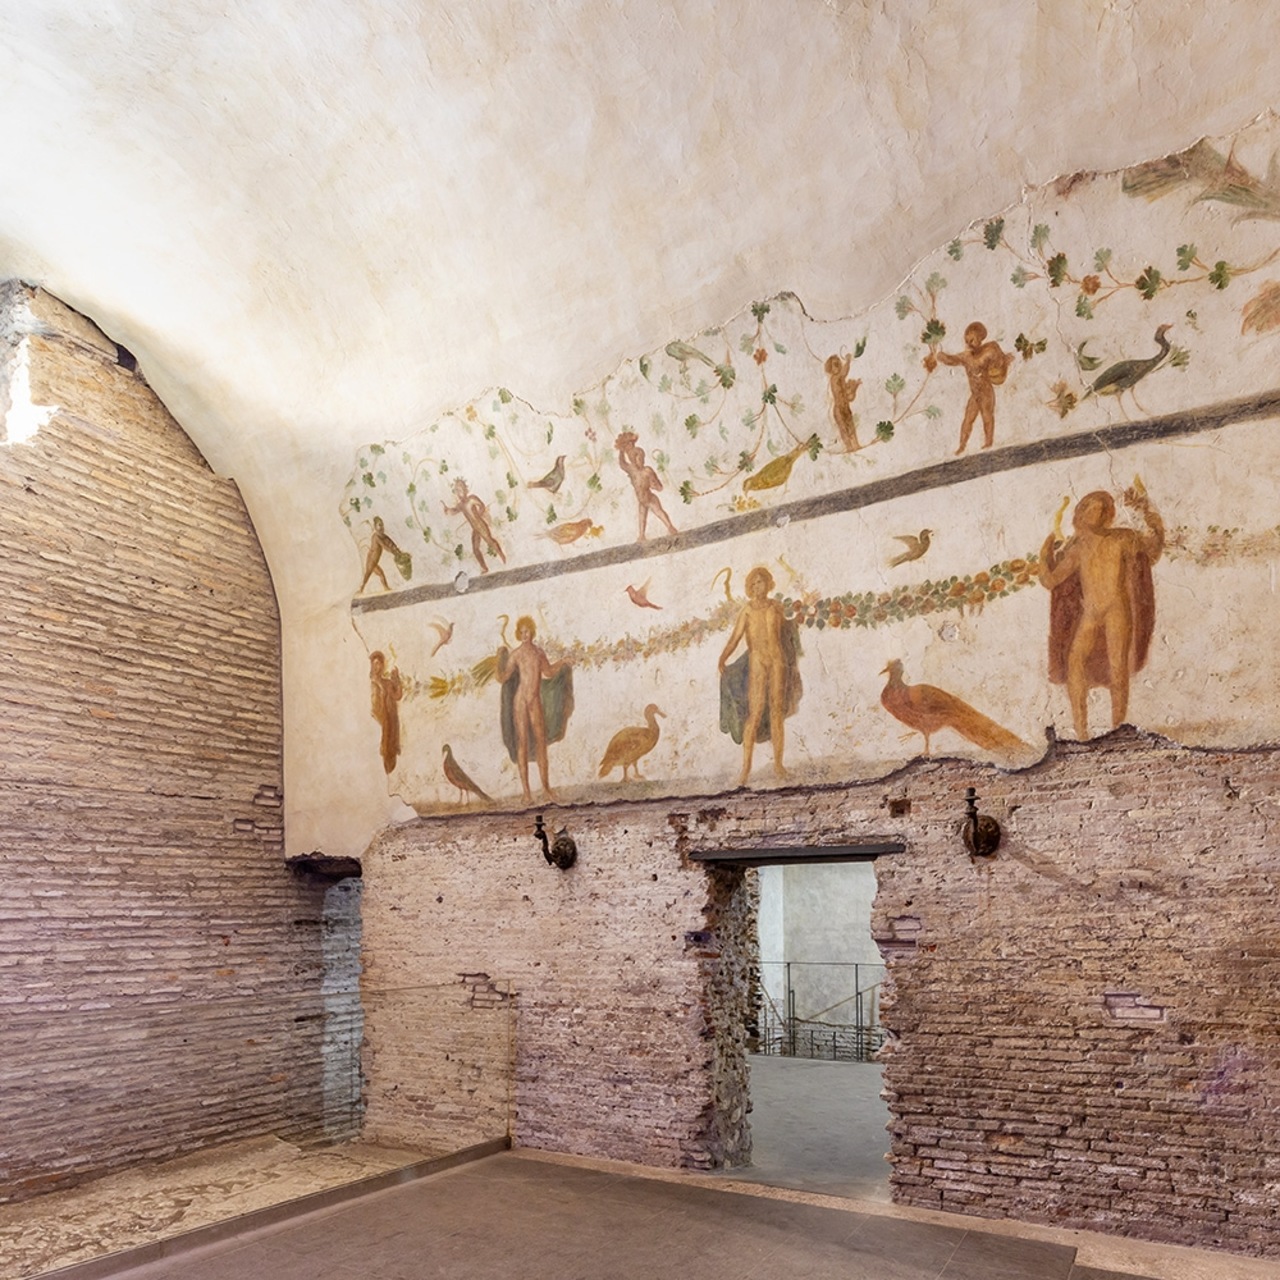 ArcheoVerso: proiectul cultural va folosi Case Romane del Celio, un antic complex rezidential roman, inca putin cunoscut chiar daca in spatele Colosseumului, pentru faza experimentala de doi ani.